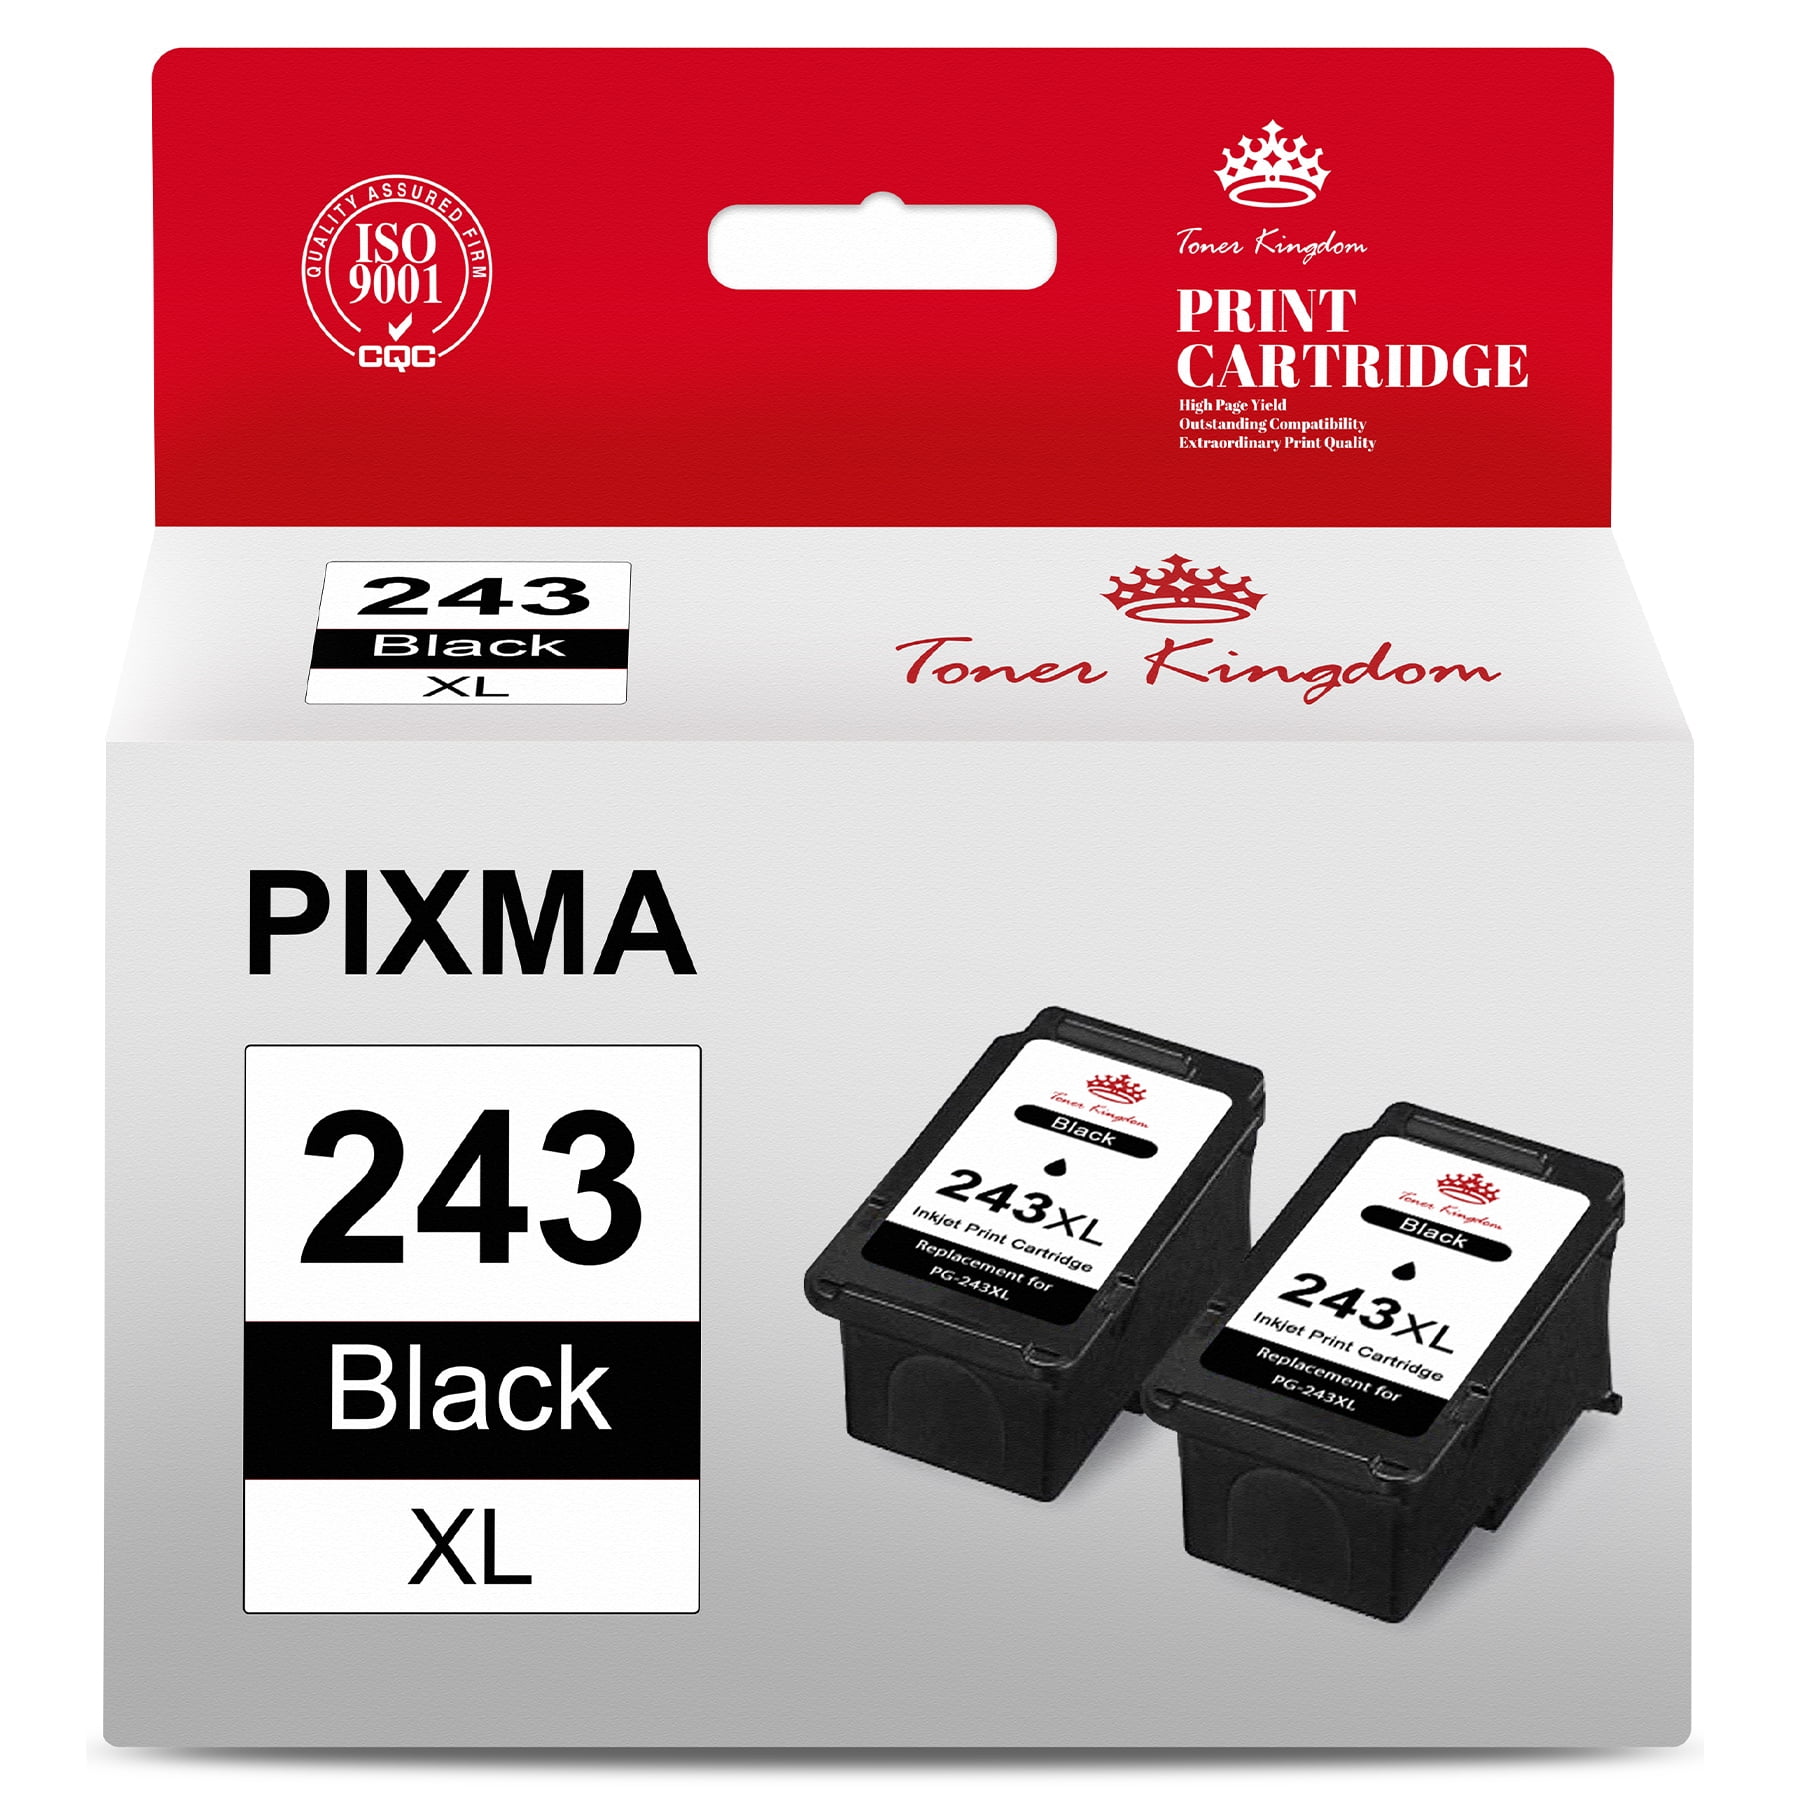 Mode d'emploi Canon PIXMA MG2550 (2 des pages)